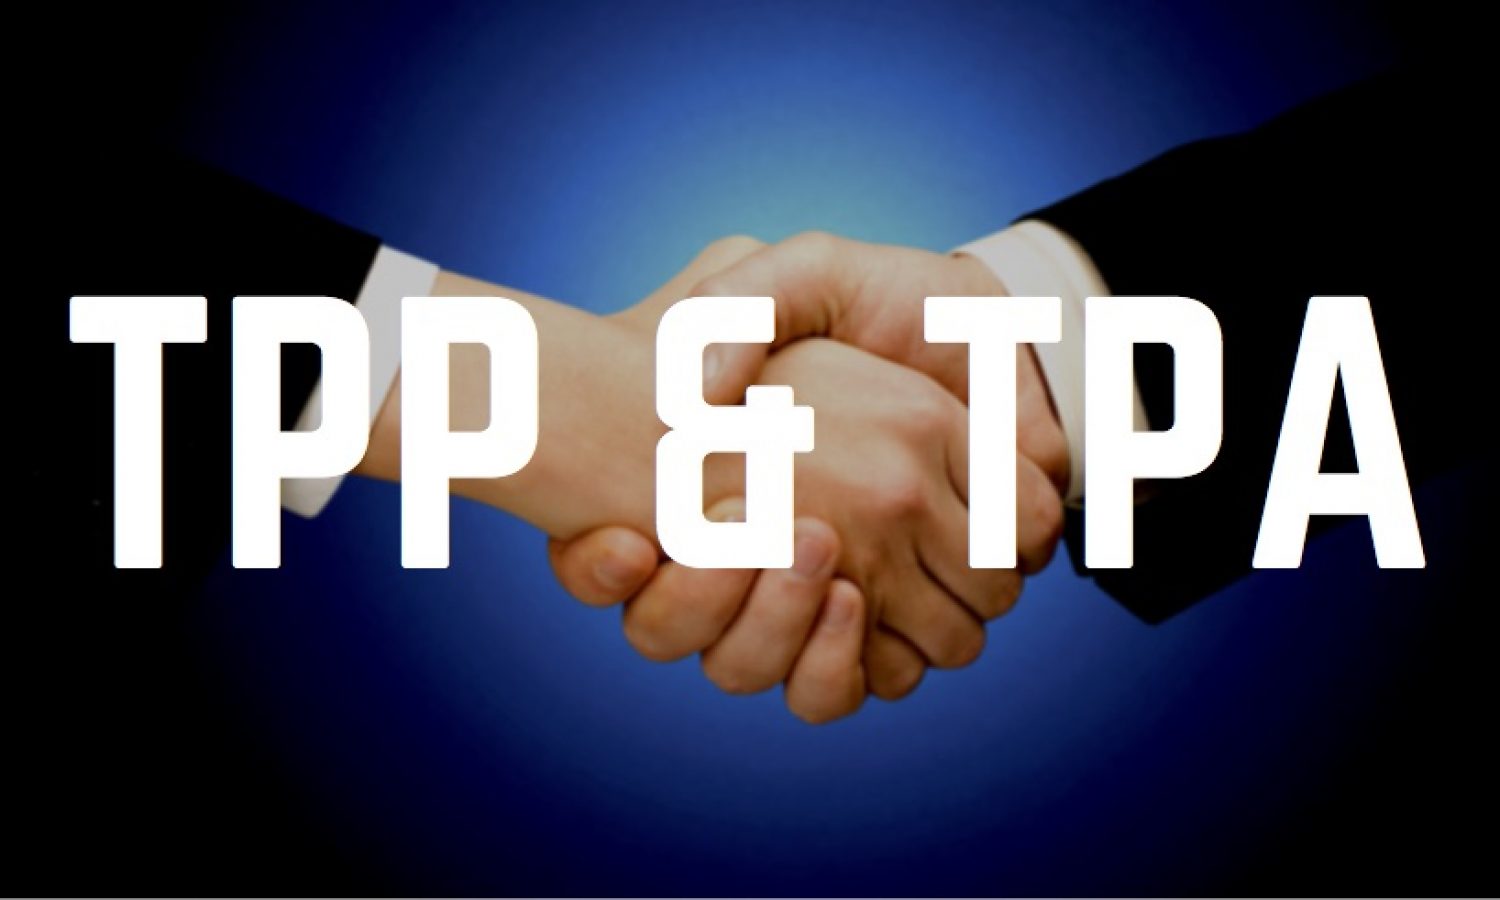 TPP & TPA